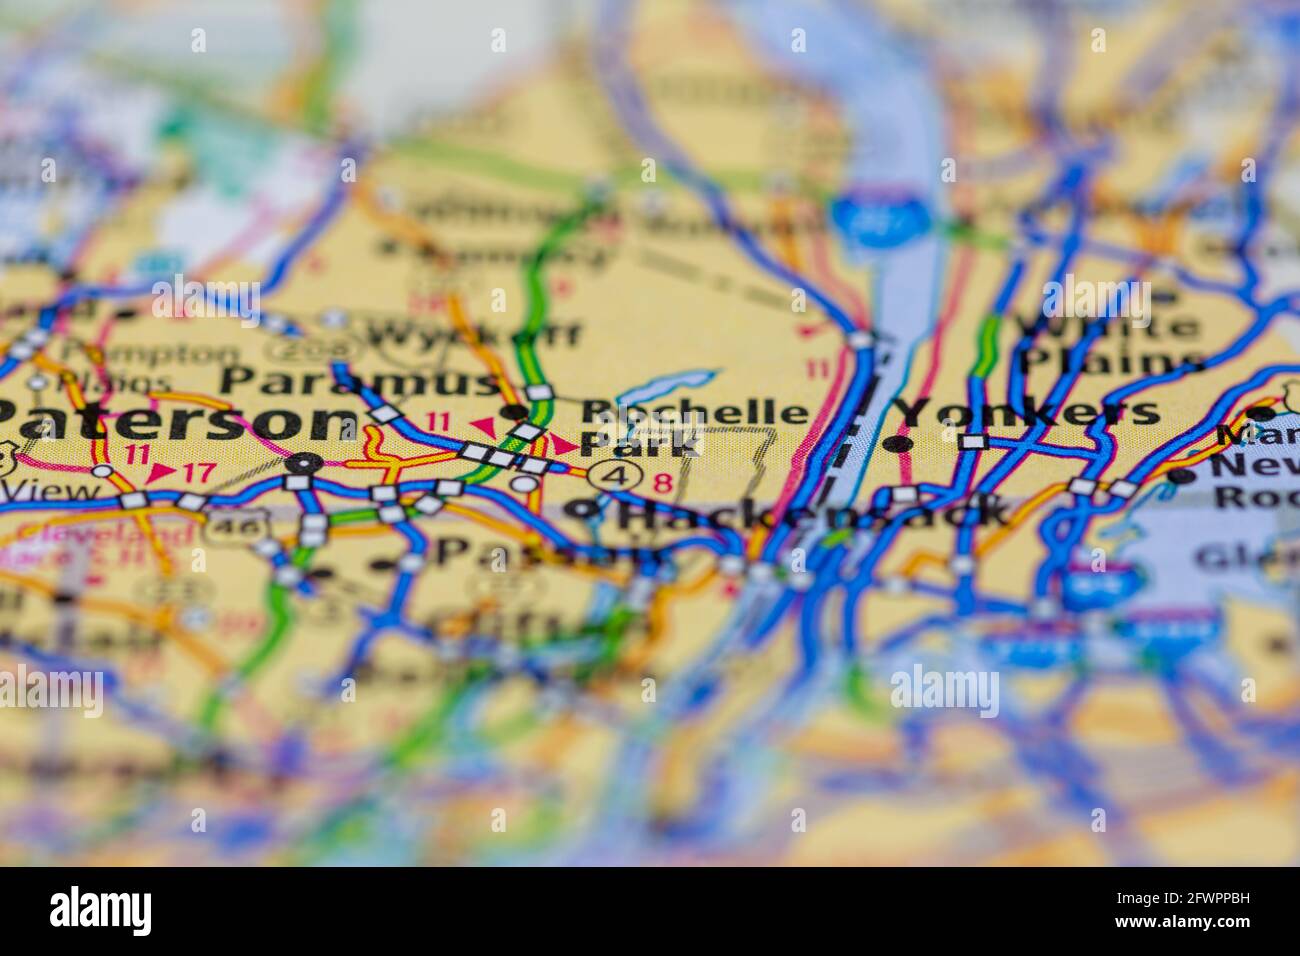 Rochelle Park New Jersey USA mostrato su una mappa geografica o mappa stradale Foto Stock